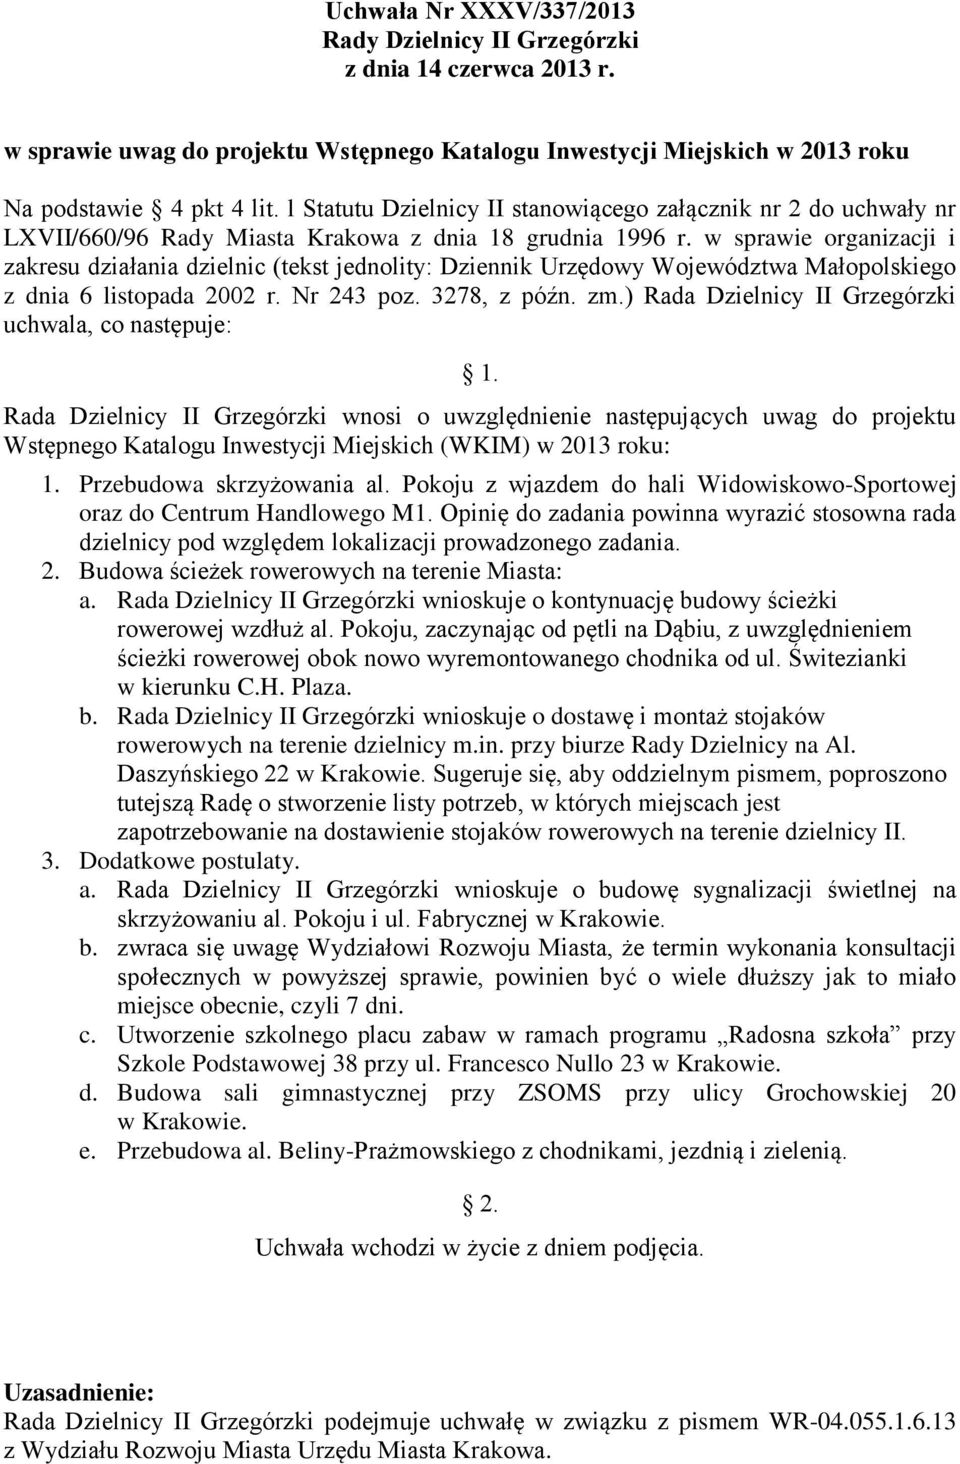 w sprawie organizacji i zakresu działania dzielnic (tekst jednolity: Dziennik Urzędowy Województwa Małopolskiego z dnia 6 listopada 2002 r. Nr 243 poz. 3278, z późn. zm.